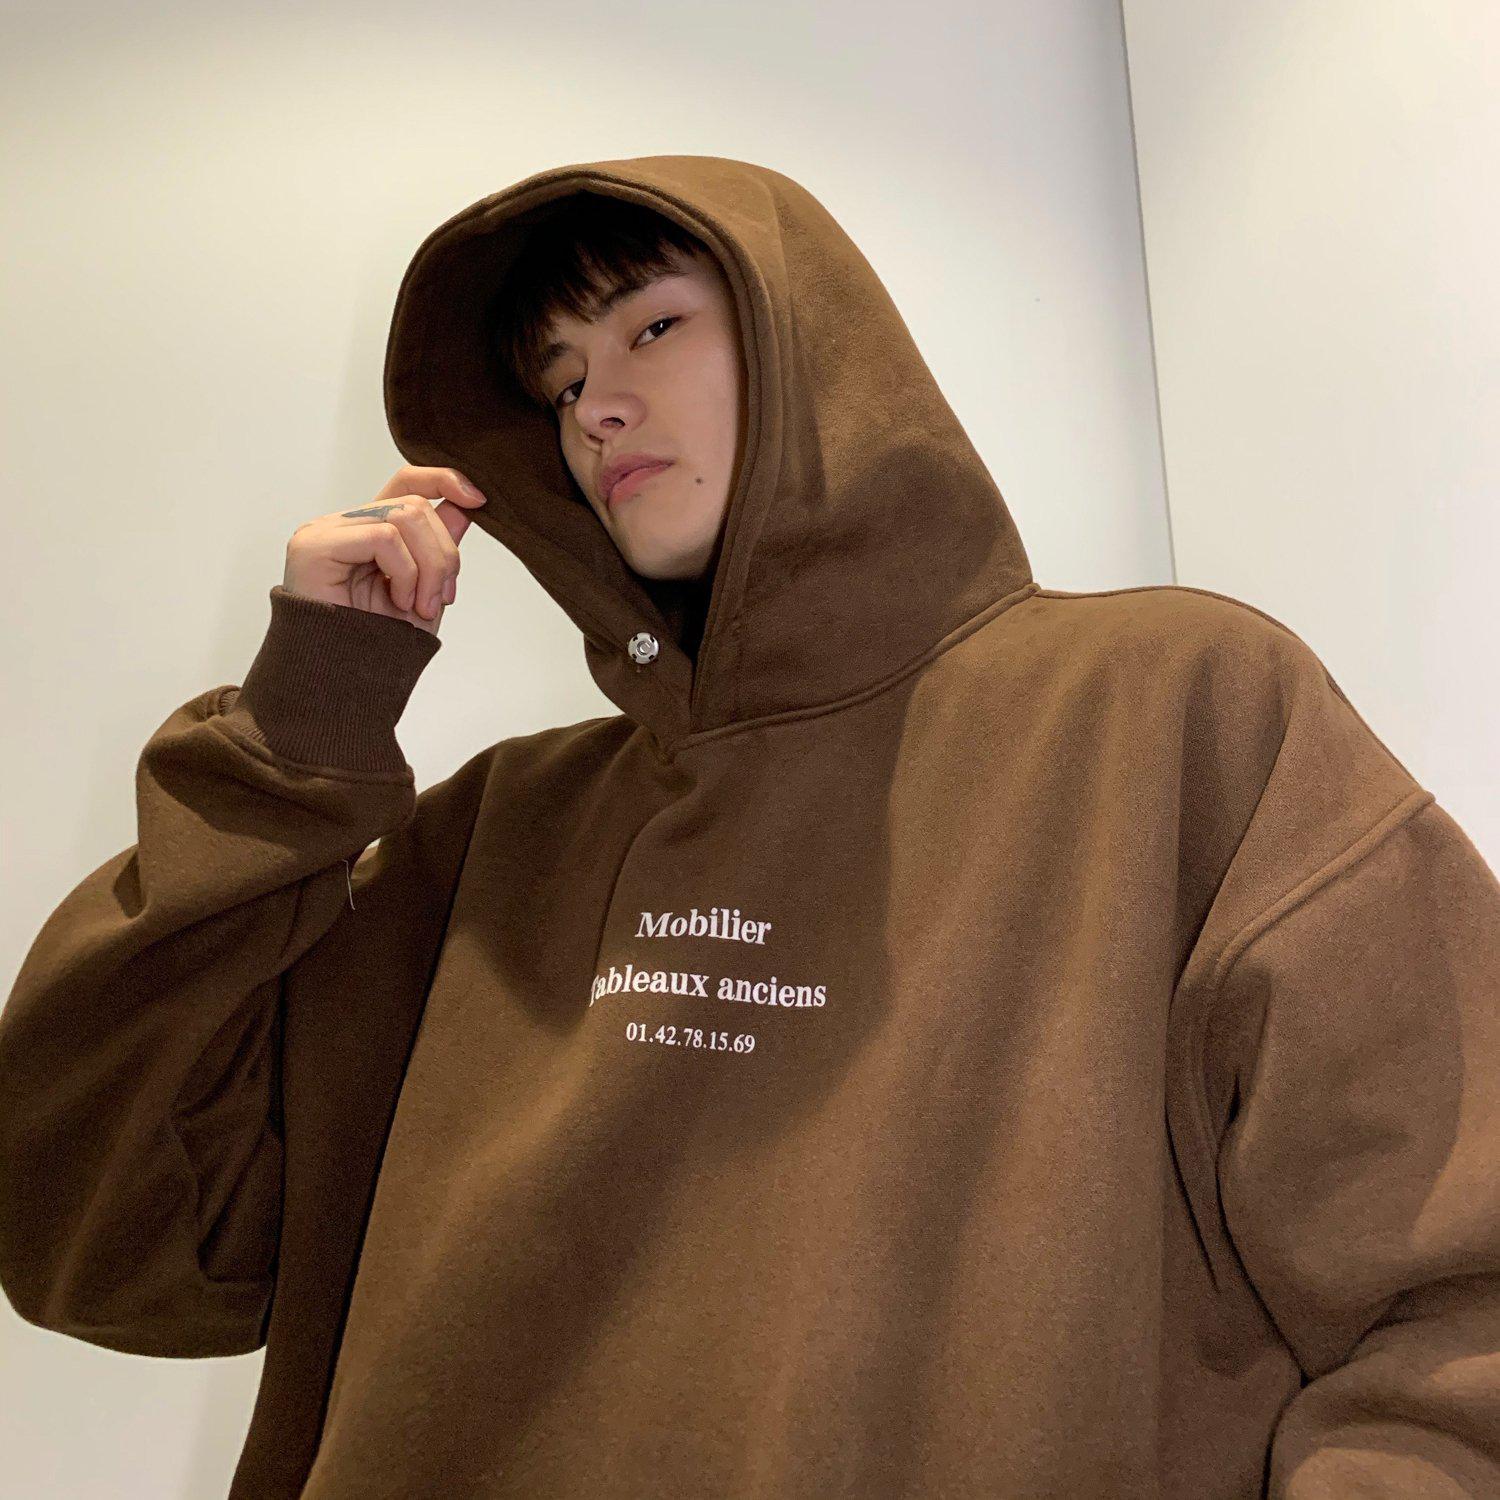 Hoodie Hood Korean Style, Korean Sweatshirt Hood